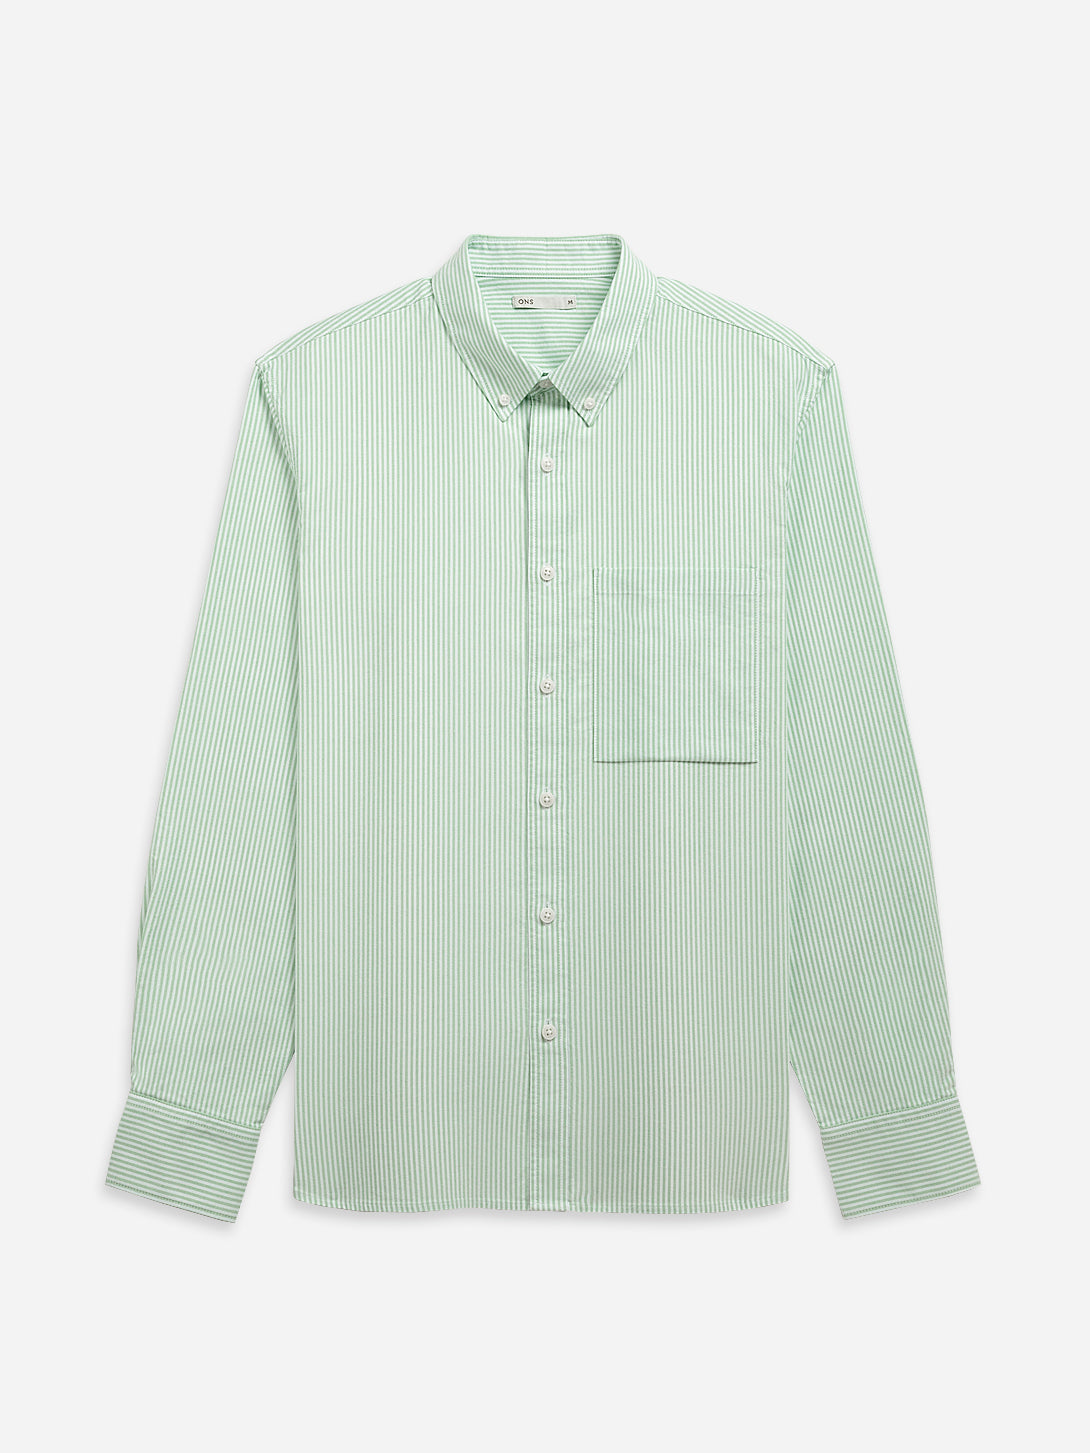 KASHMIR GREEN/WHITE STRIPE Vance Stripe Oxford Shirt Mens Button Down Pocket Shirt